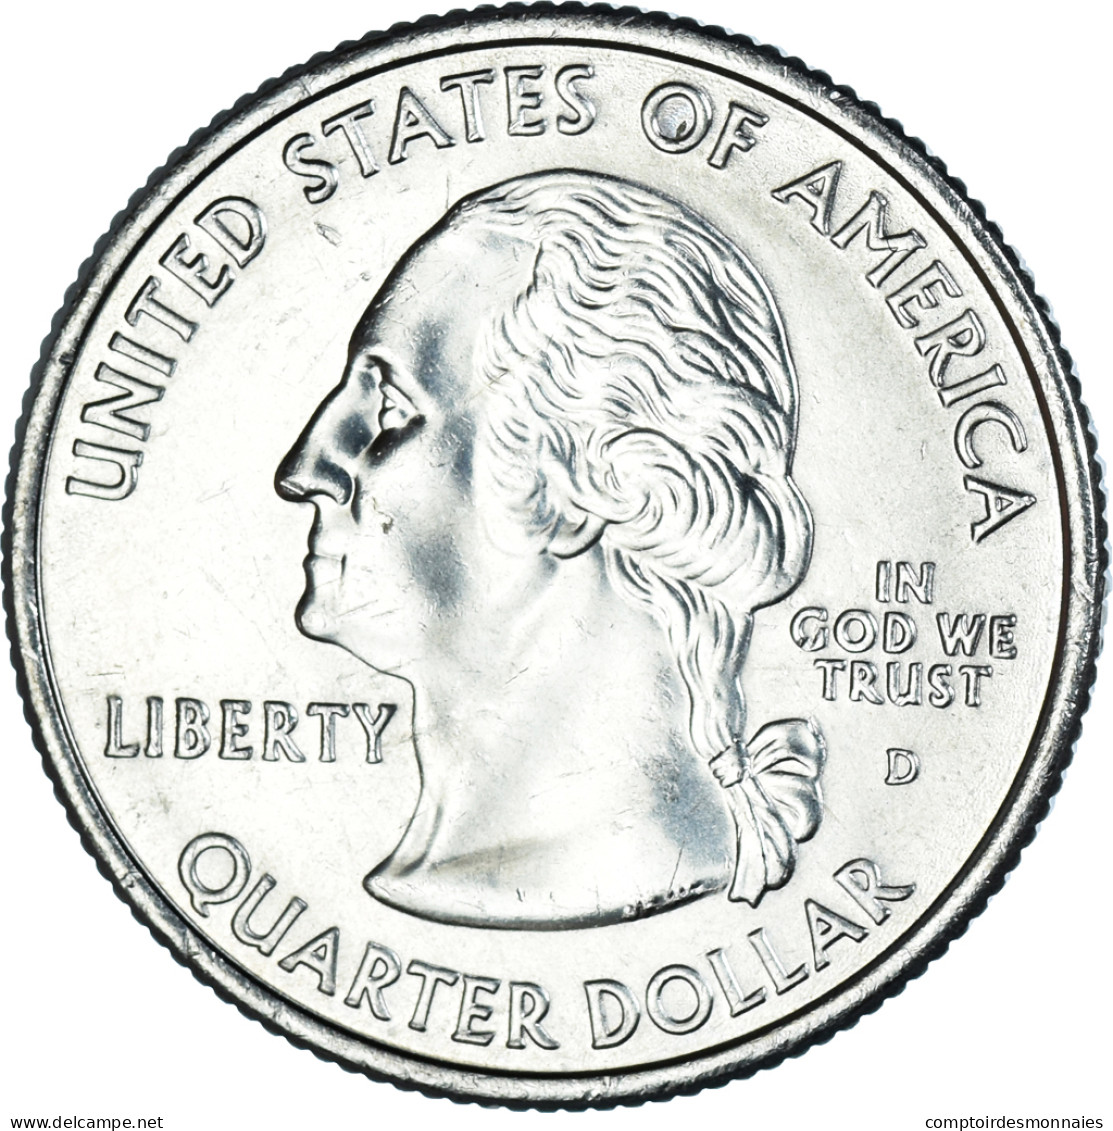 Monnaie, États-Unis, Quarter, 2007, U.S. Mint, Denver, Washington 1889, SPL - 1999-2009: State Quarters